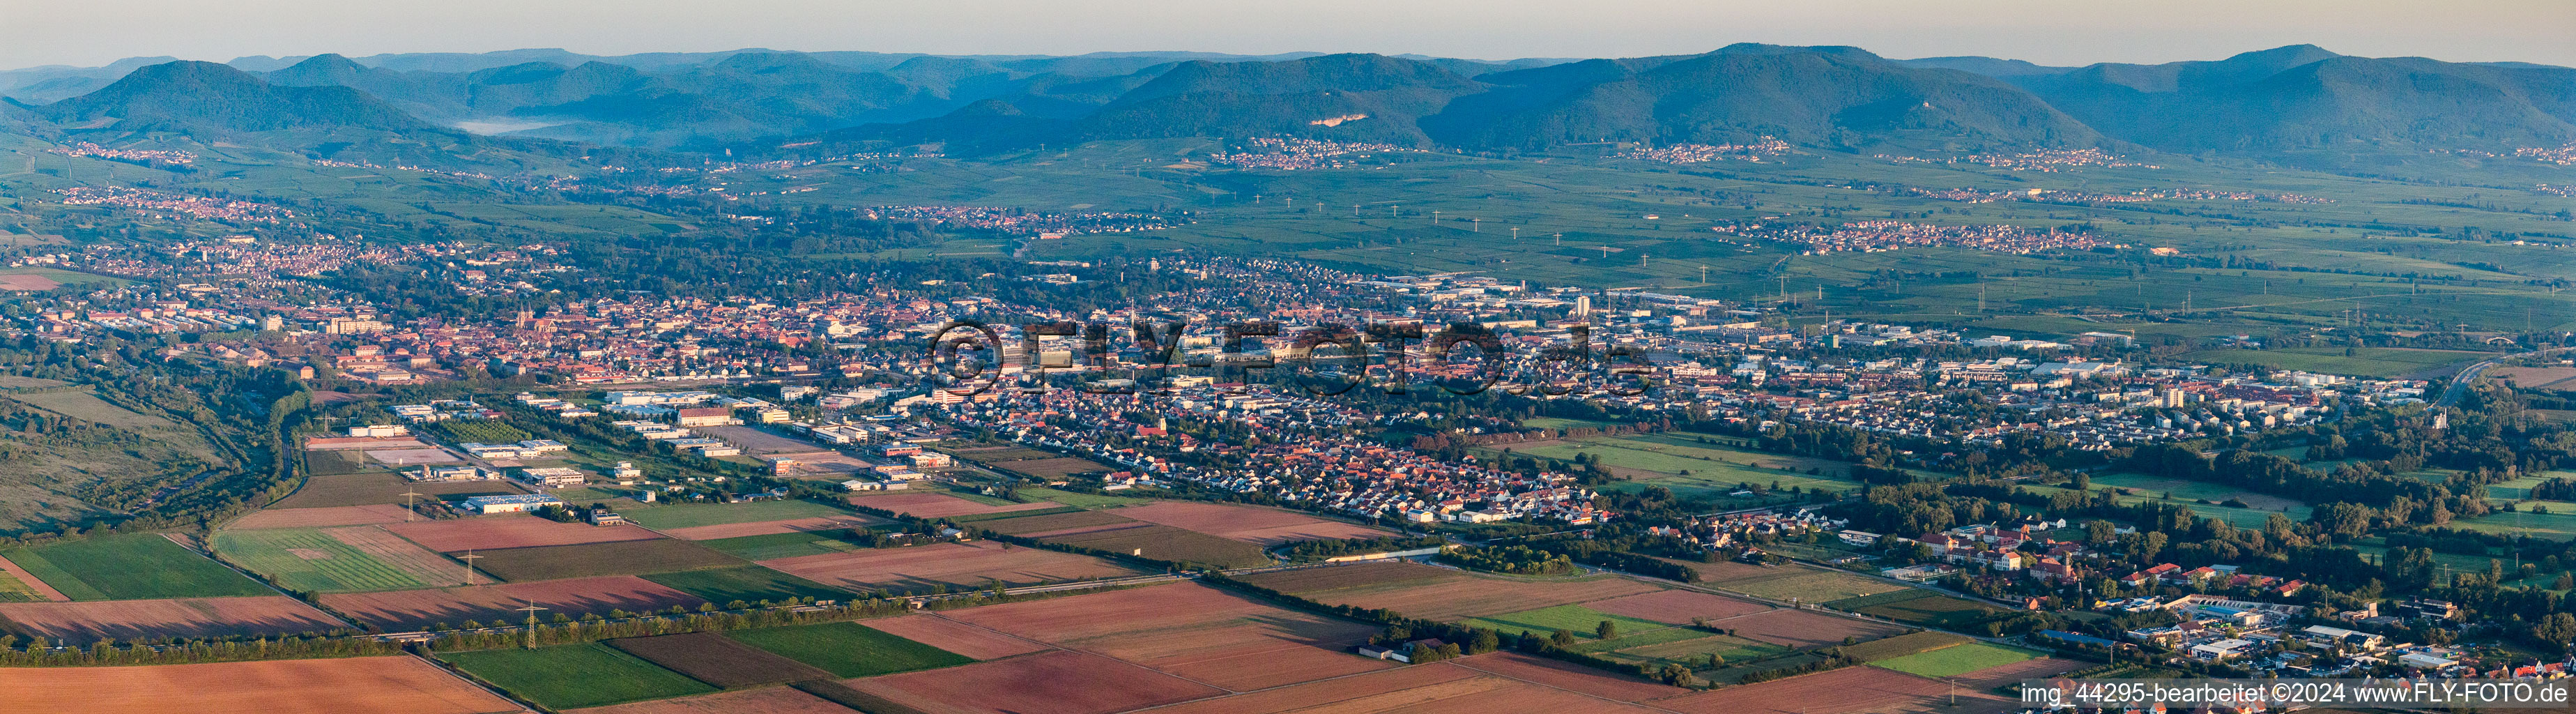 Luftbild von Panorama Perspektive Stadtgebiet mit Außenbezirken und Innenstadtbereich in Landau in der Pfalz im Ortsteil Queichheim im Bundesland Rheinland-Pfalz, Deutschland